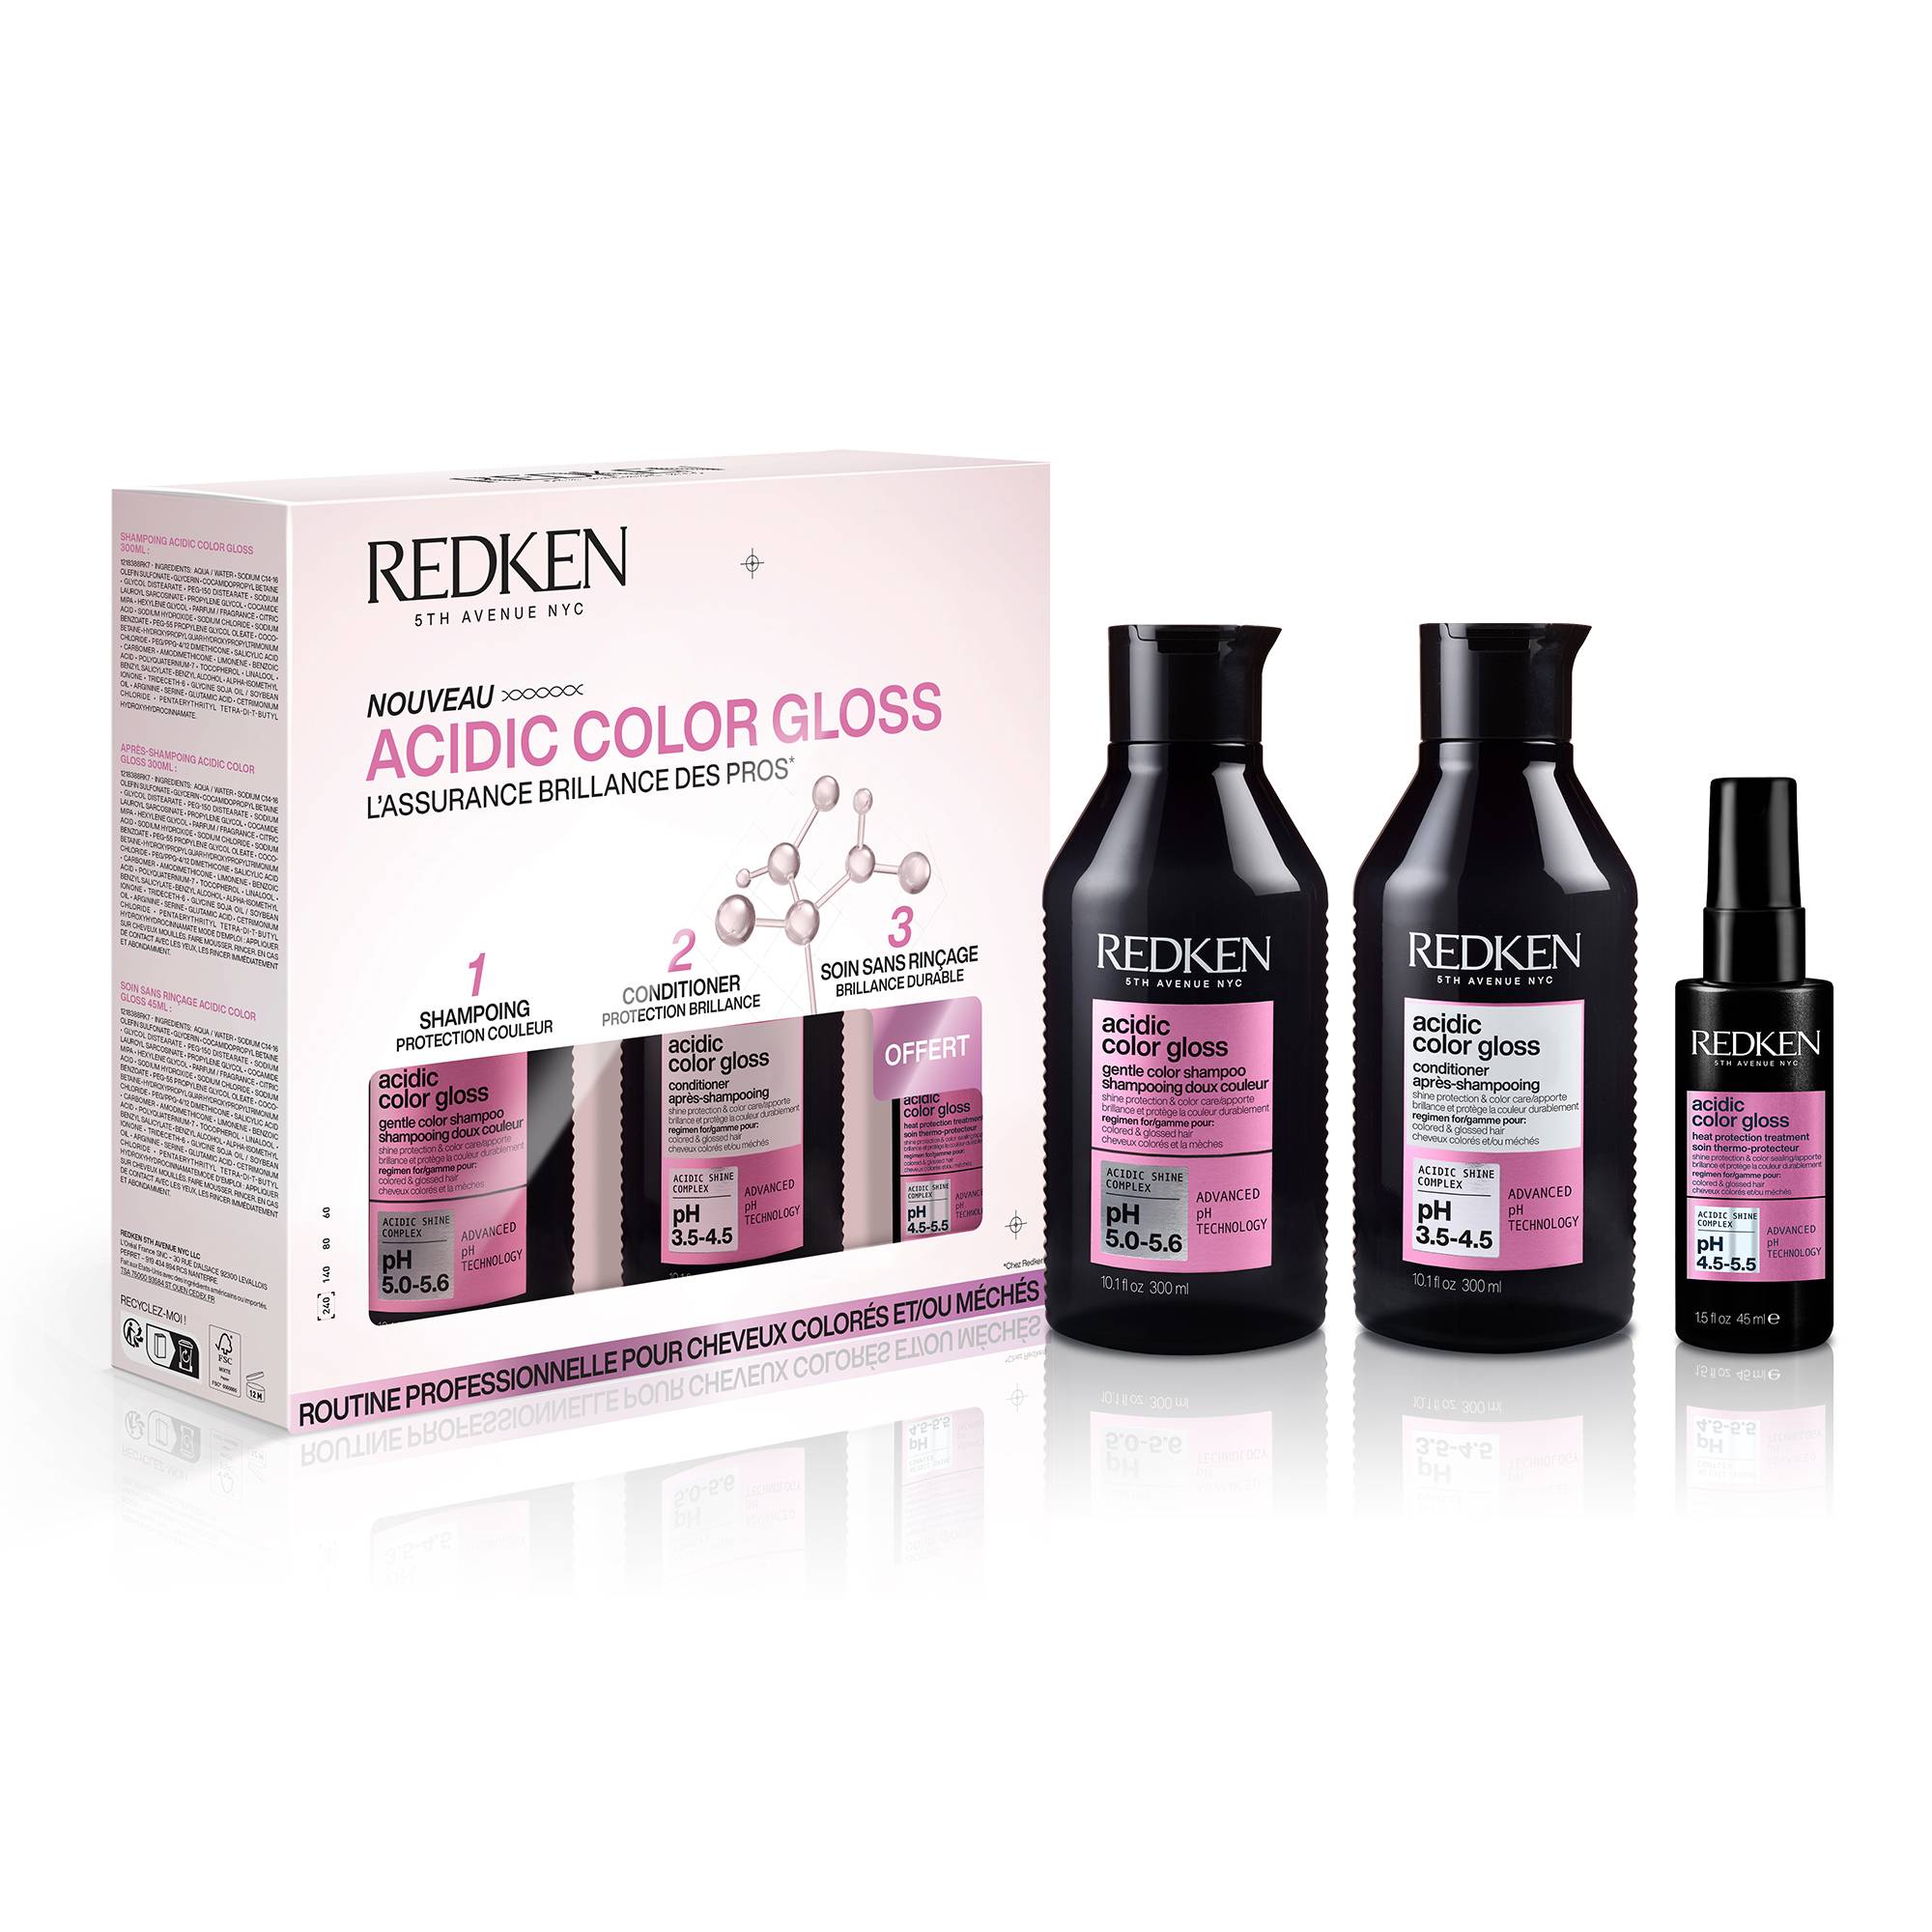 Kit Acidic Color Gloss pour cheveux colorés et méchés de la marque Redken - 2